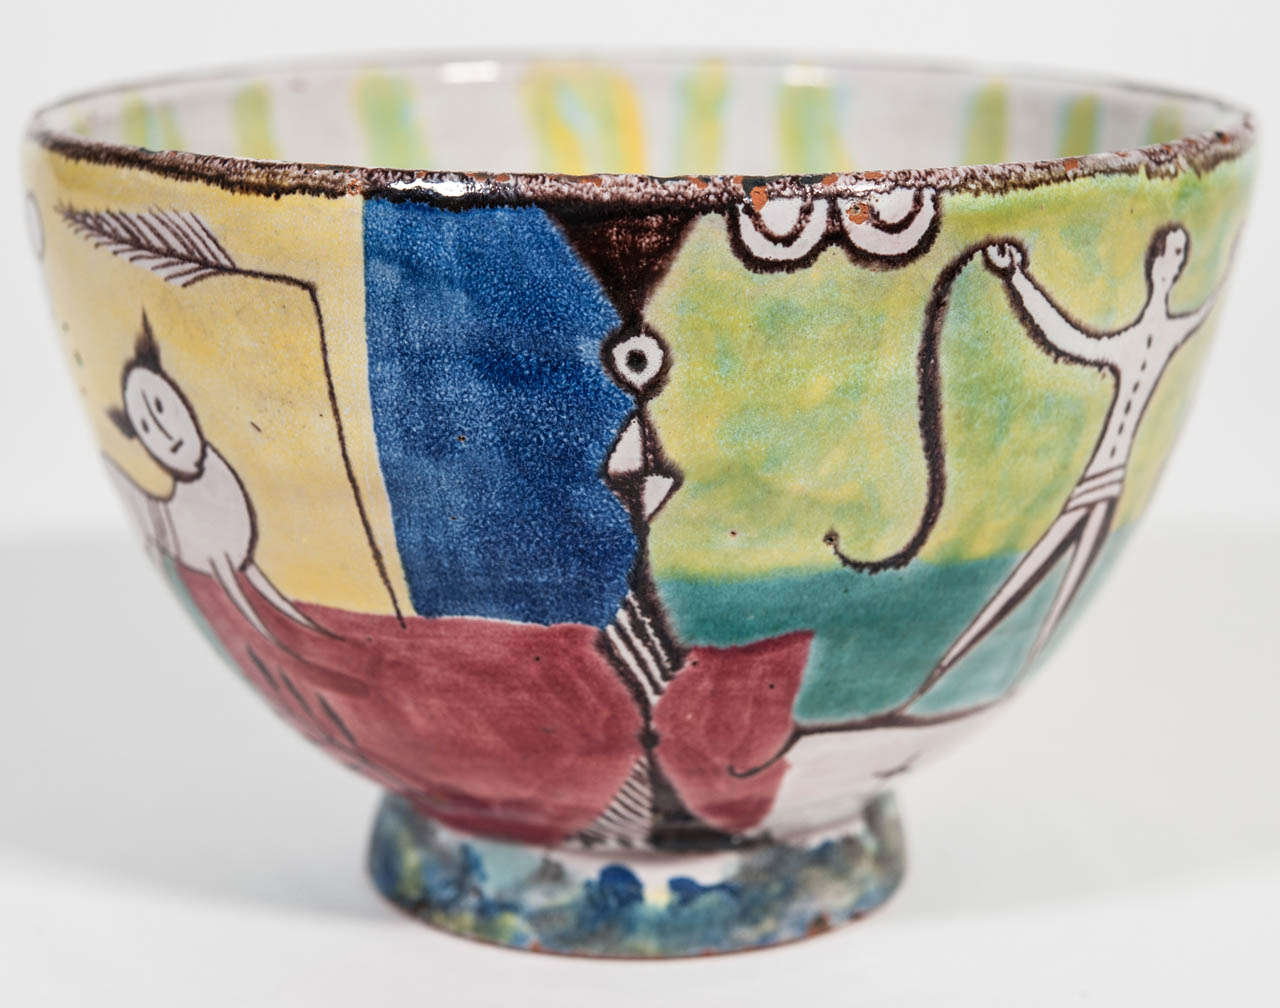 Wiener Werkstatte modernist polychrome ceramic bowl, designed by Maria Likarz Stauss/Anny Schroder. Signed.